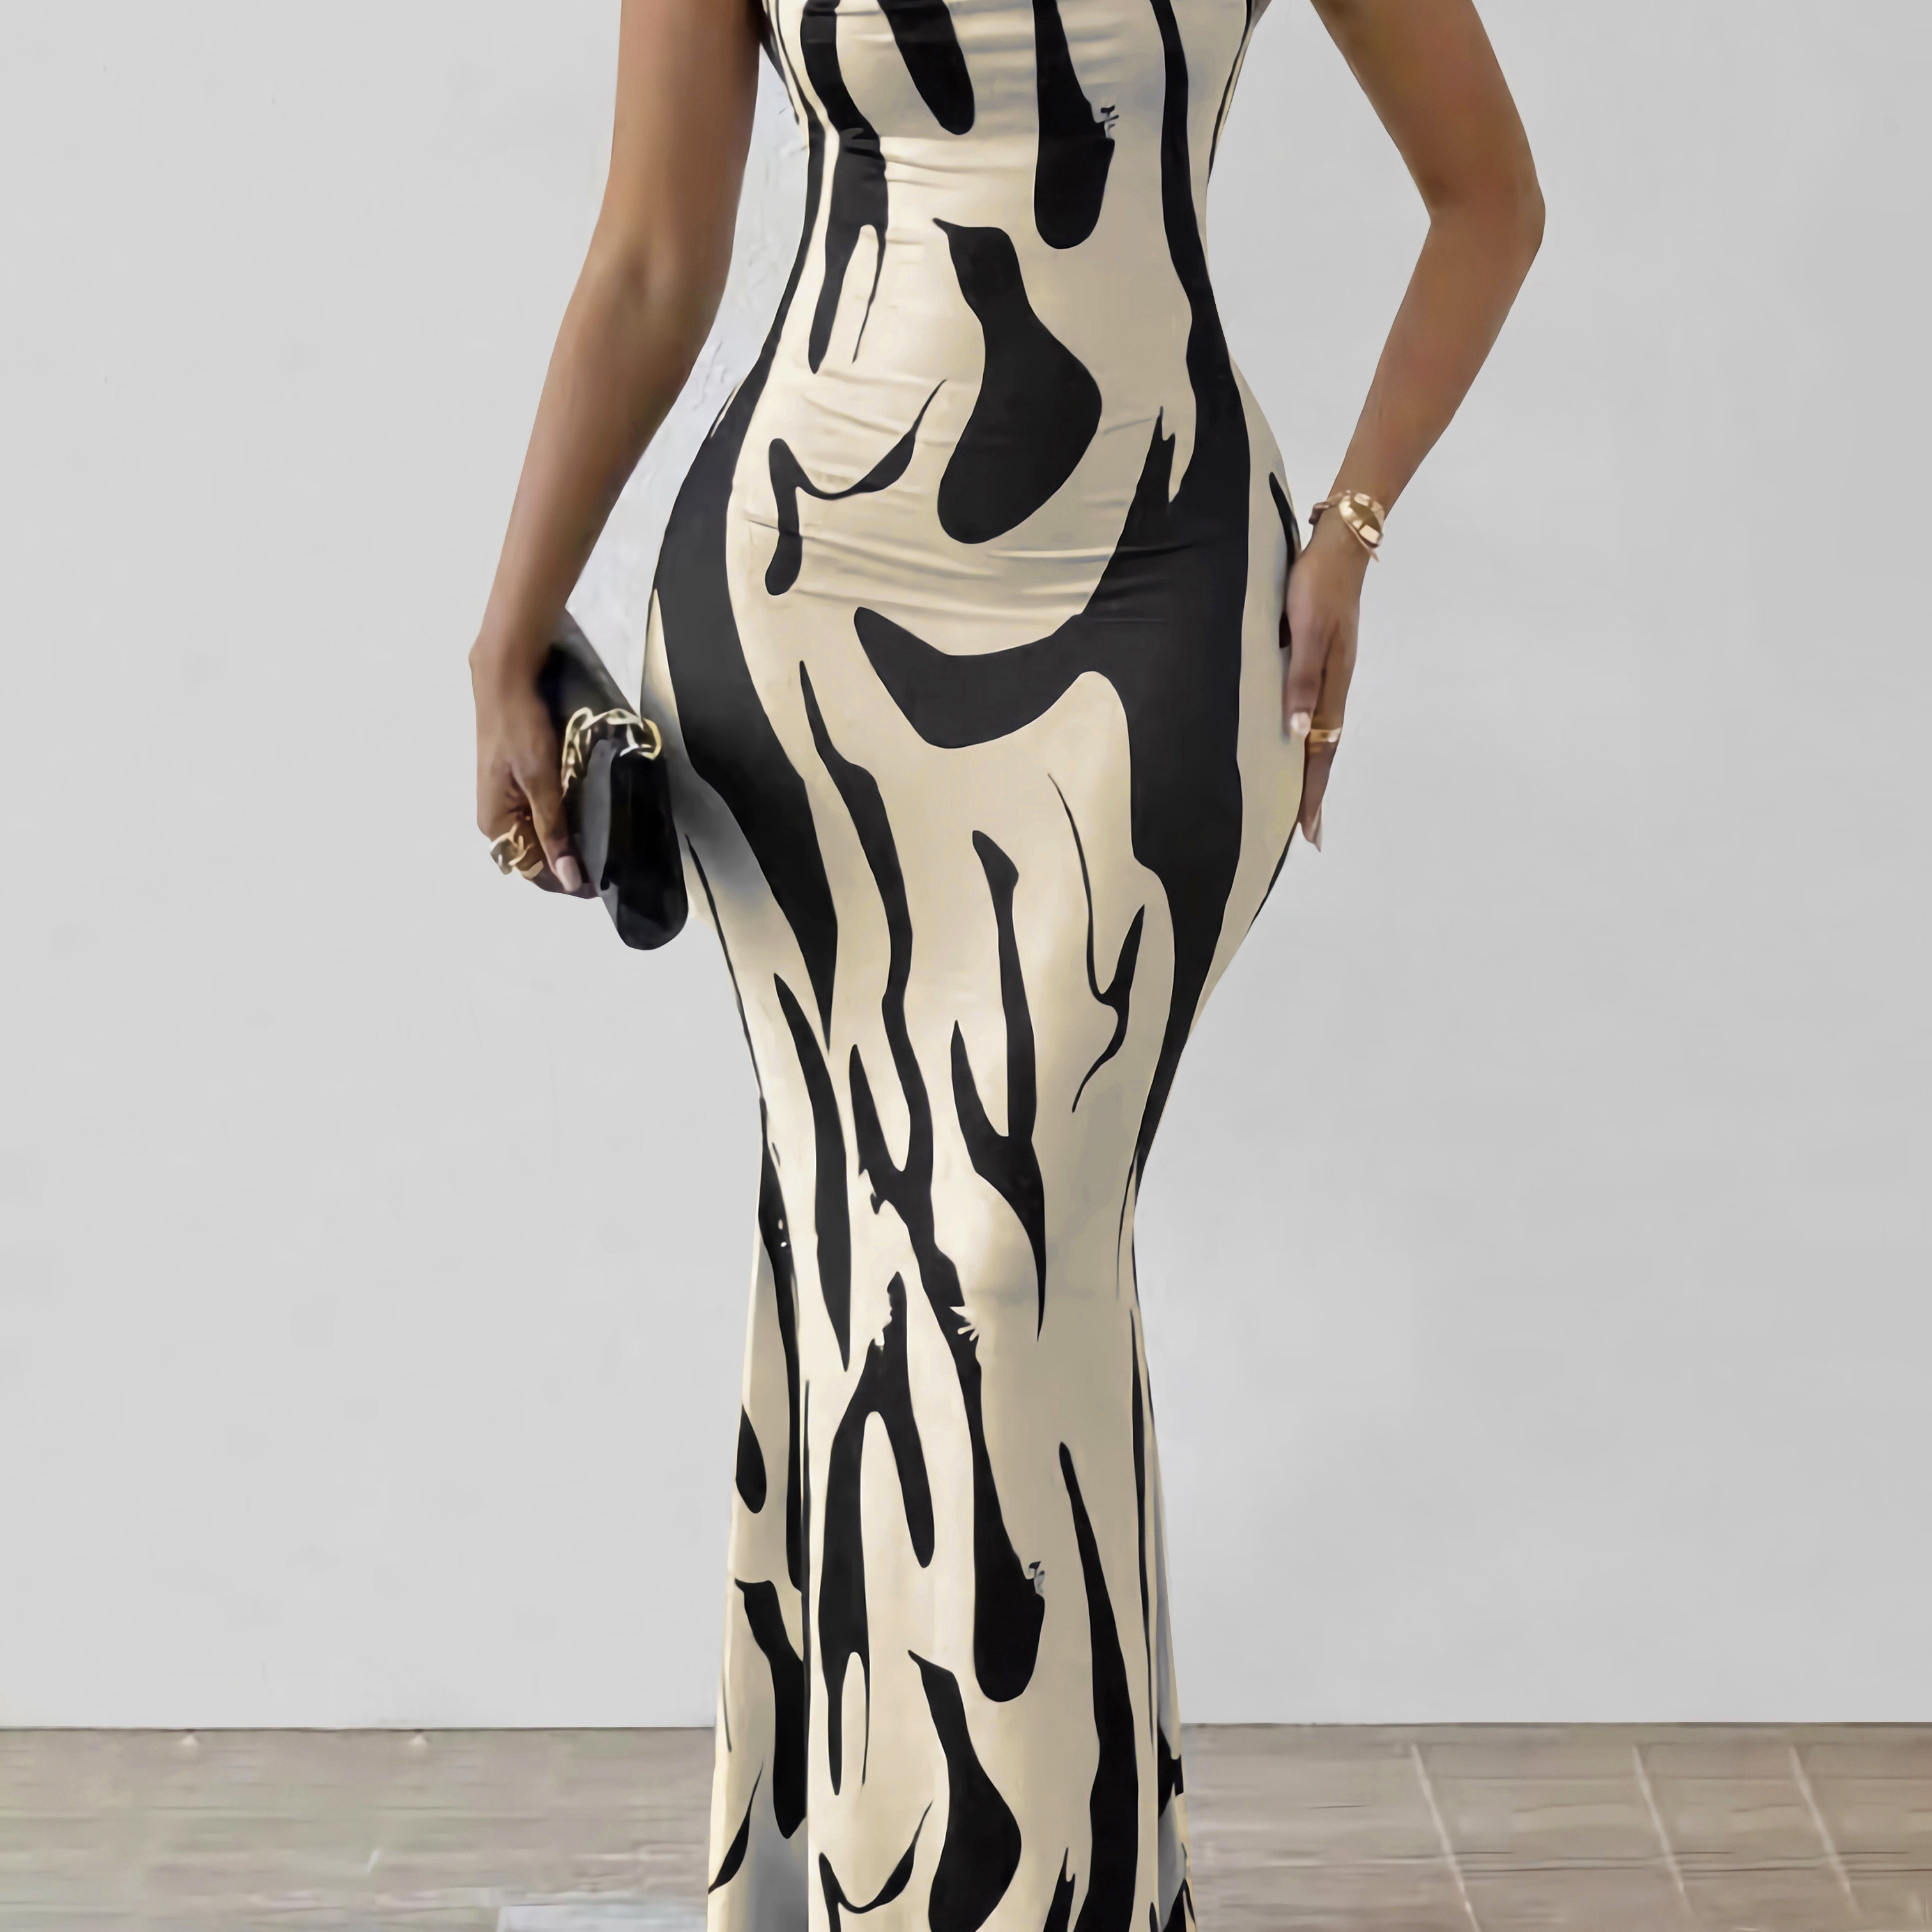 

Allover Print Cowl Neck Dress, Elegant Sleeveless Floor Length Bodycon Dress For Spring & Summer, Women's Clothing